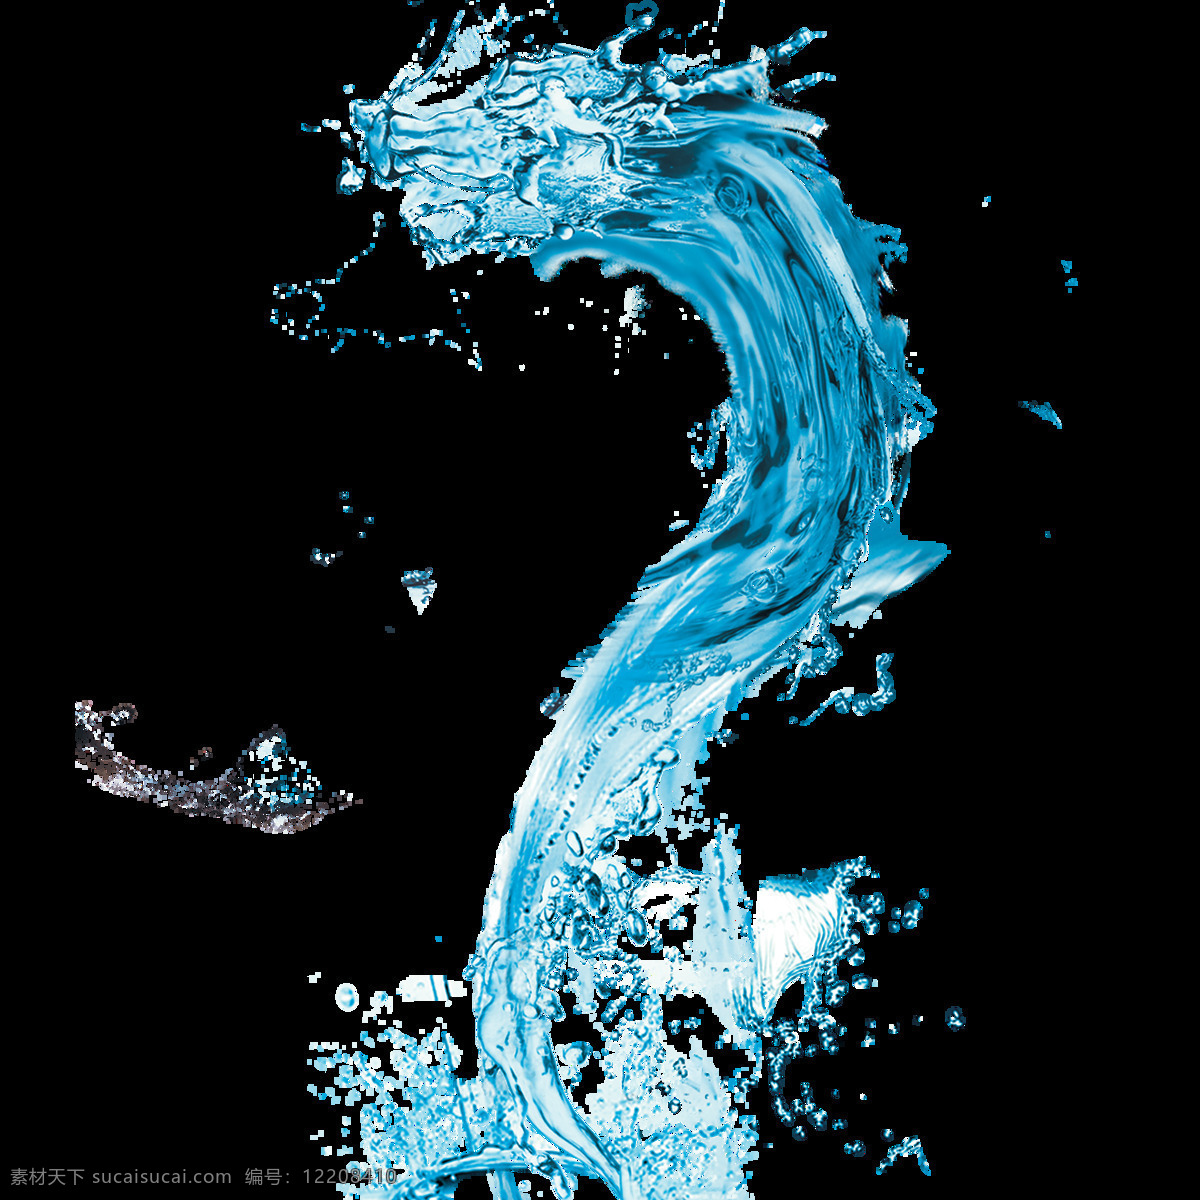 水龙 龙 龙形 蟠龙 水 创意 液体 透明 清凉 水滴 液态 流水 流动 柔 元素 流体 流质 点滴 滴水 蓝色 金木 风火 水土